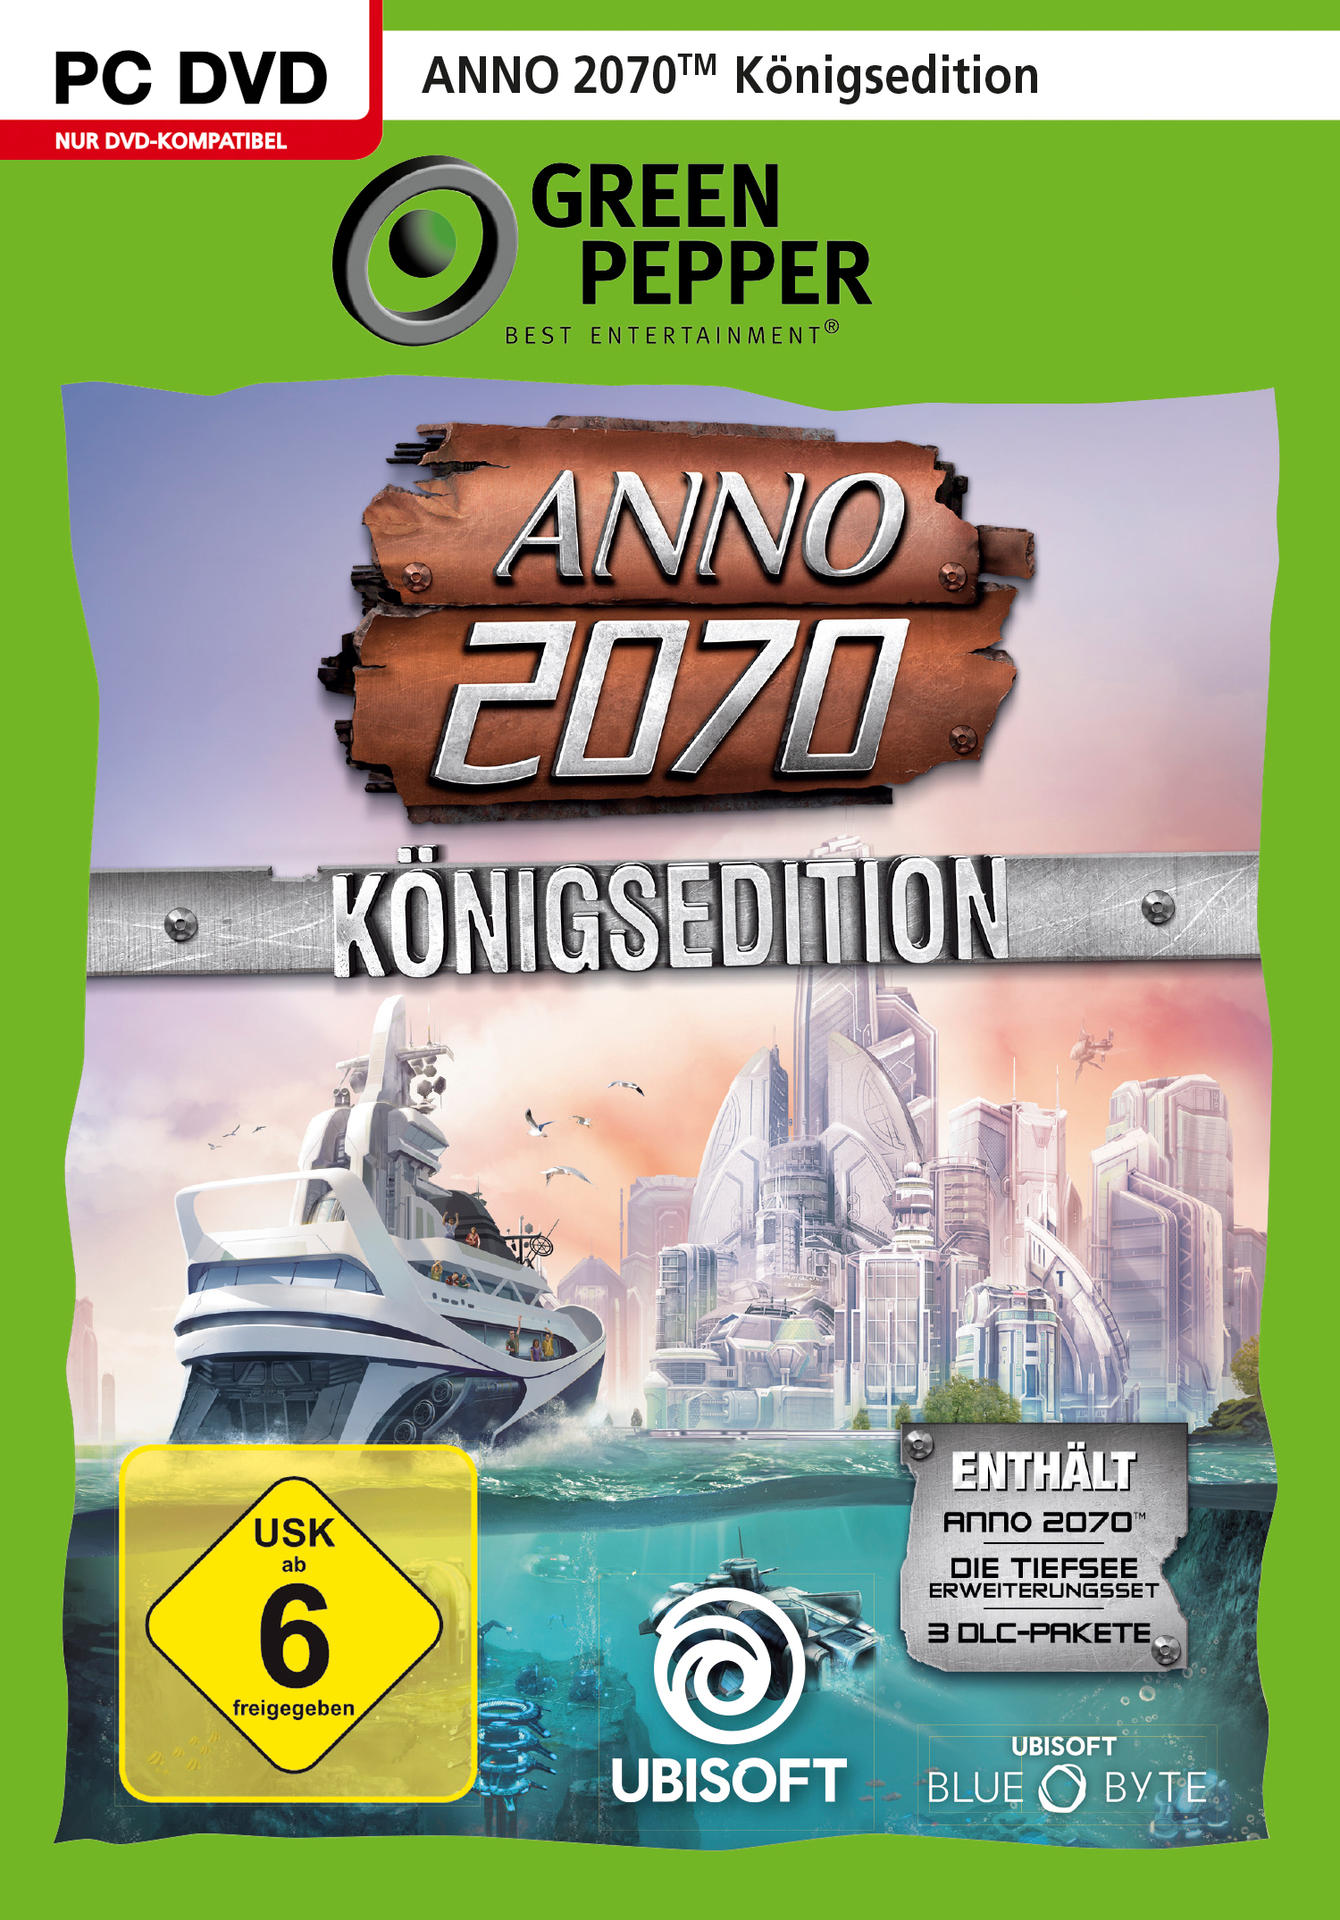 ANNO 2070 - [PC] Königsedition